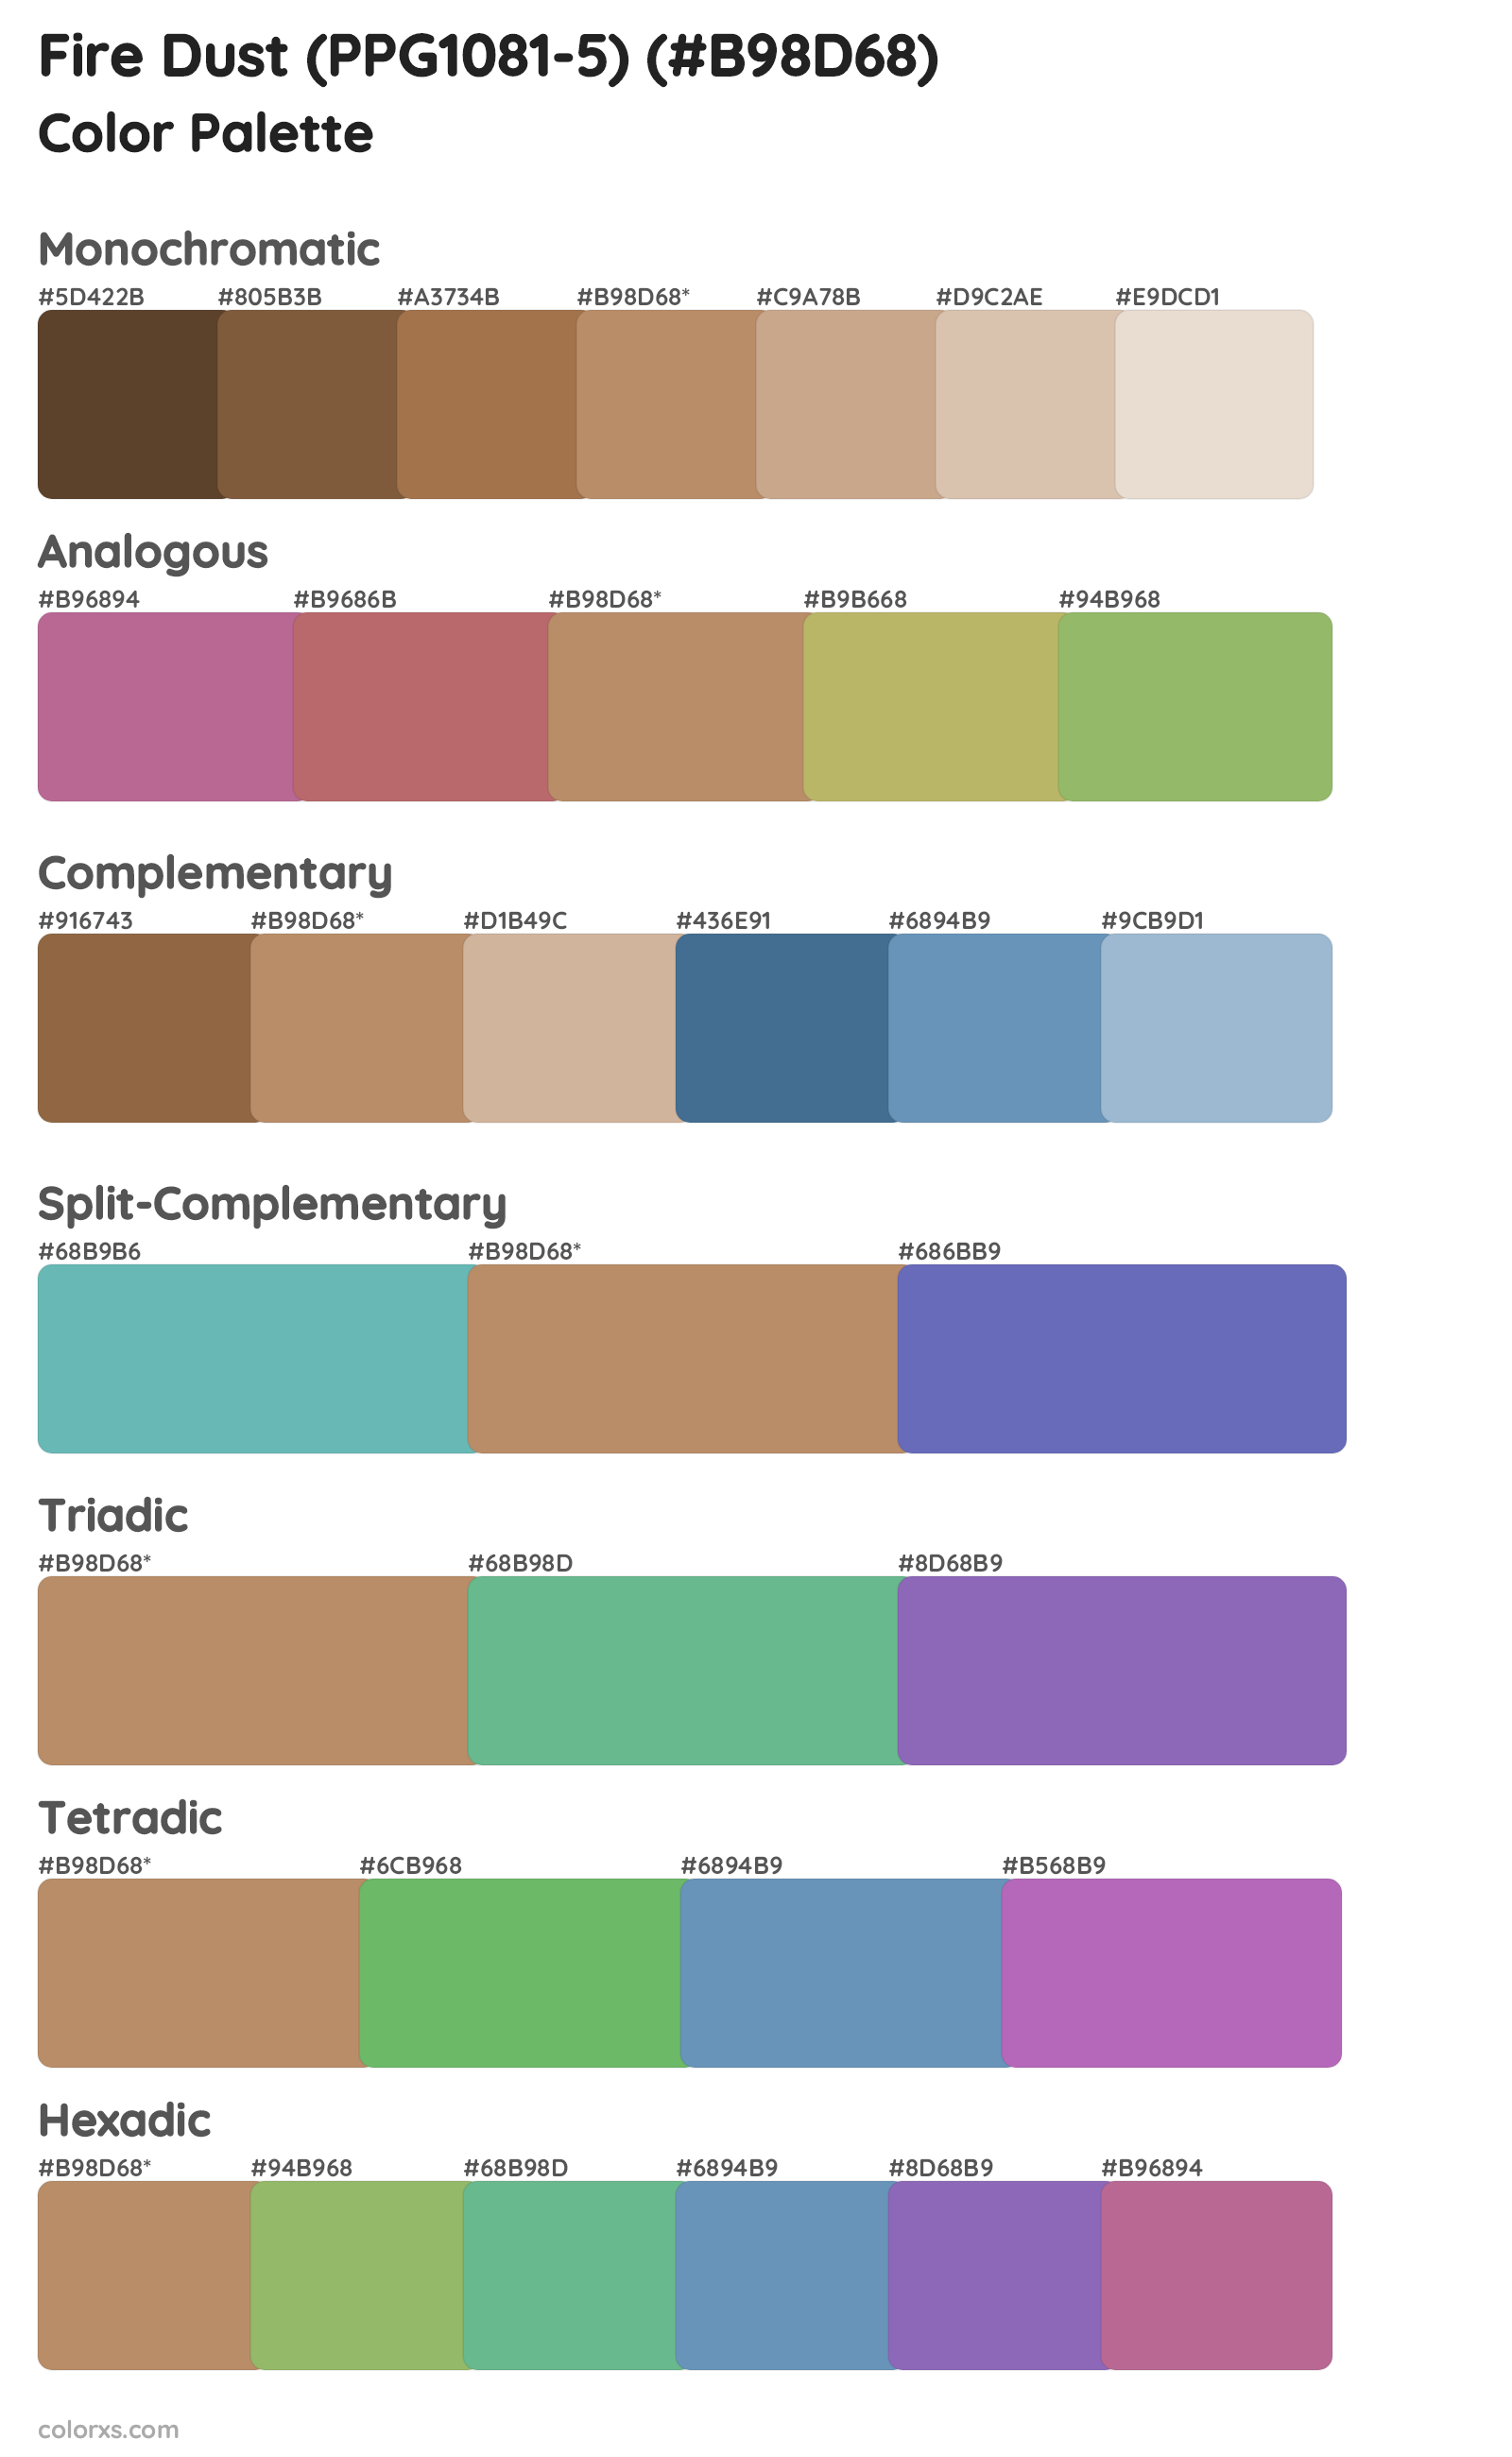 Fire Dust (PPG1081-5) Color Scheme Palettes